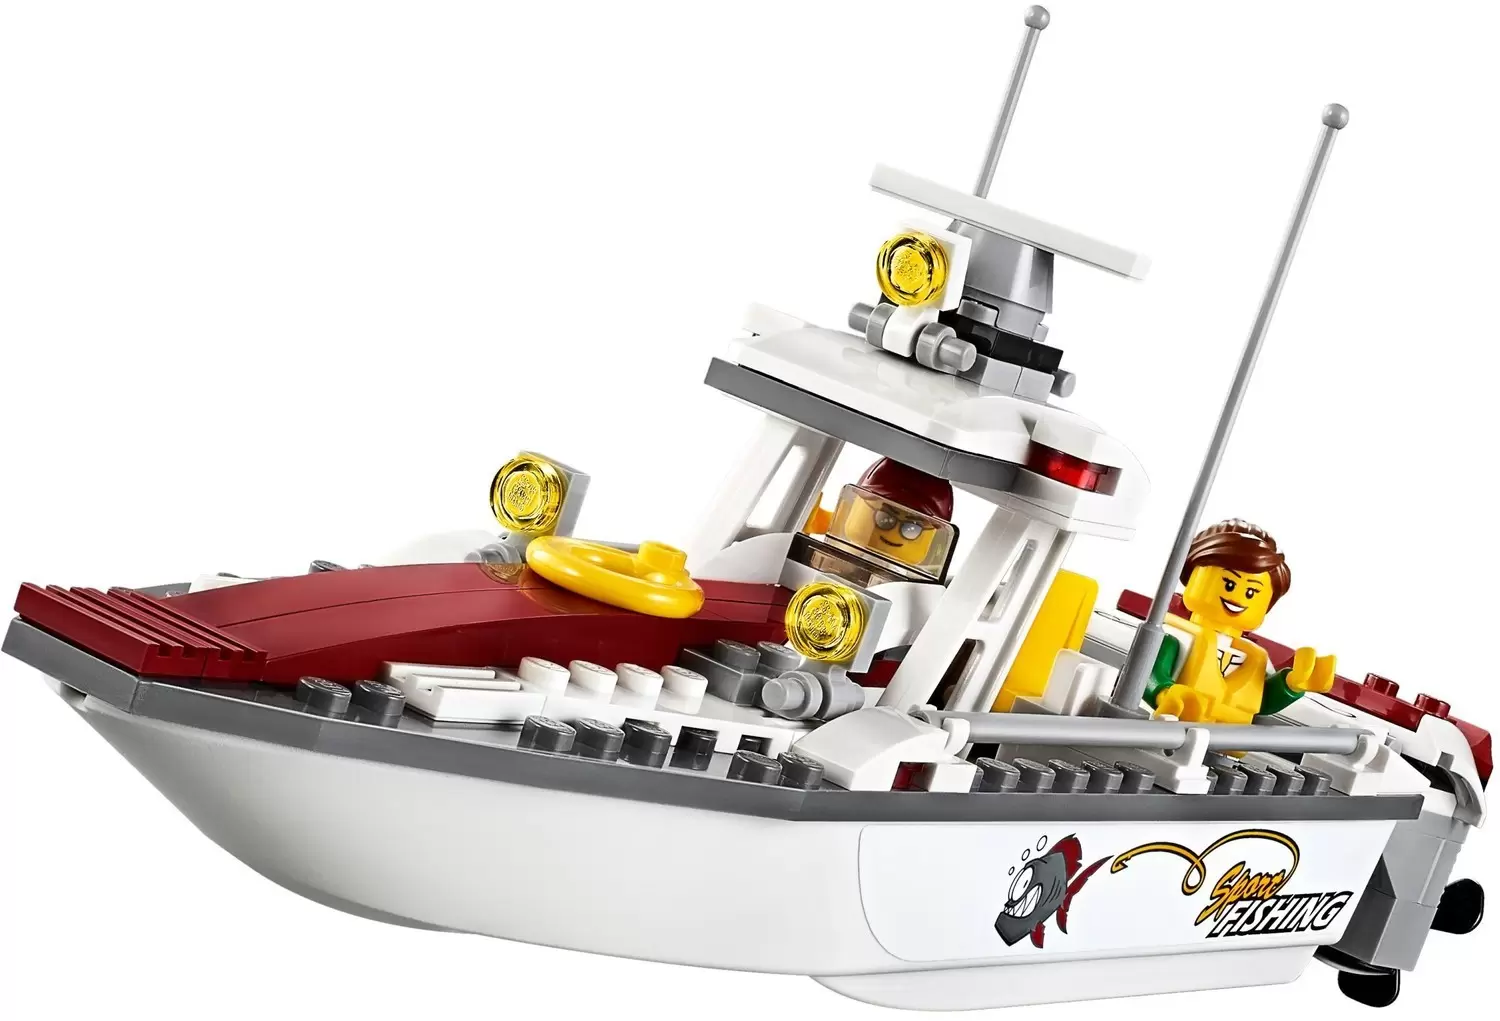  Lego Fishing Boat